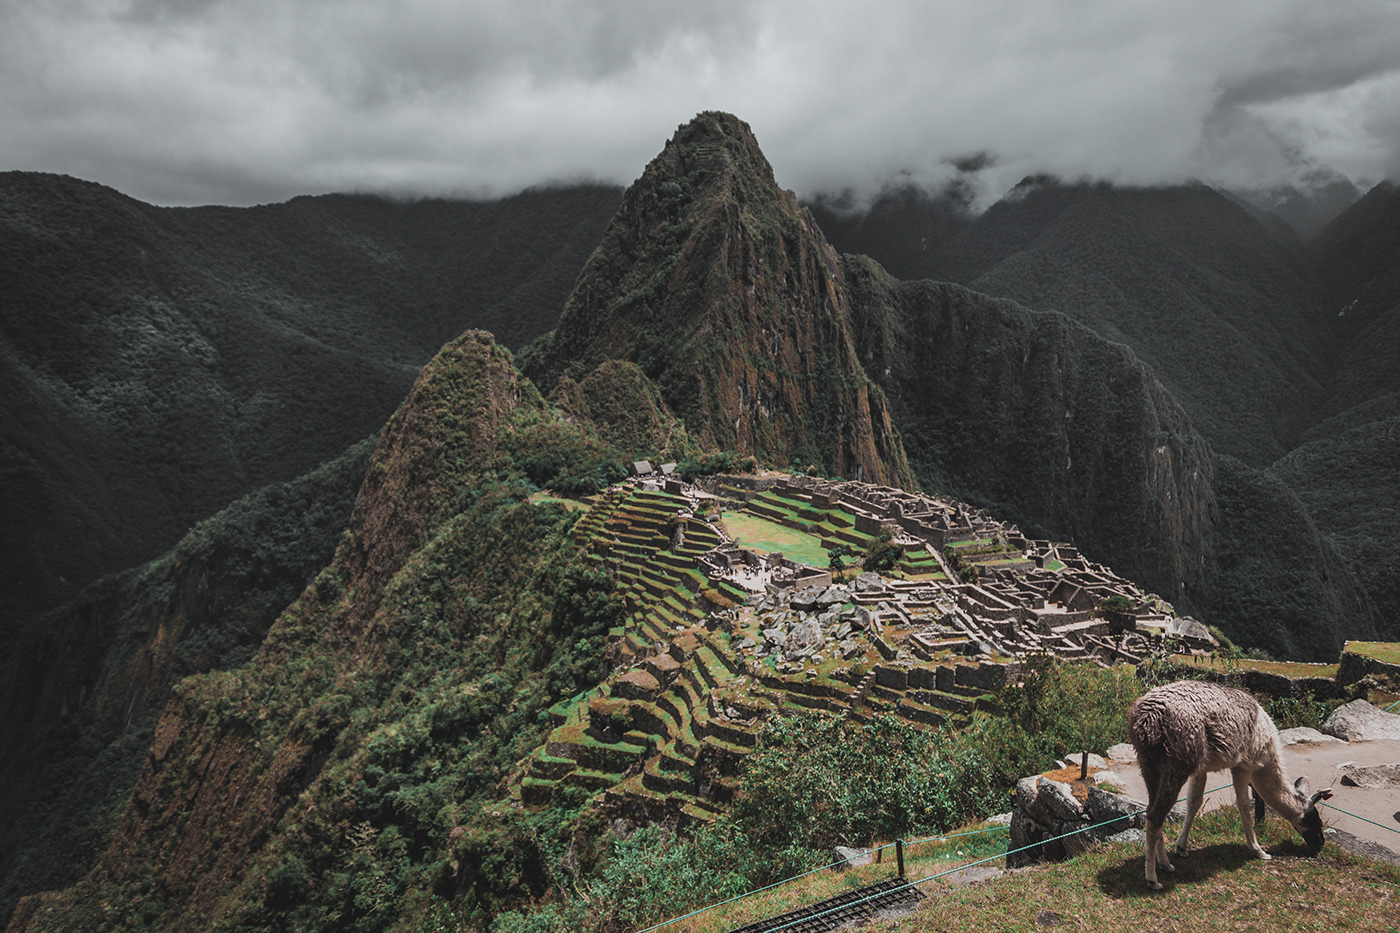 cusco cusco peru landscape photography landscapes beauty photography peru phtotography maravilla del mundo